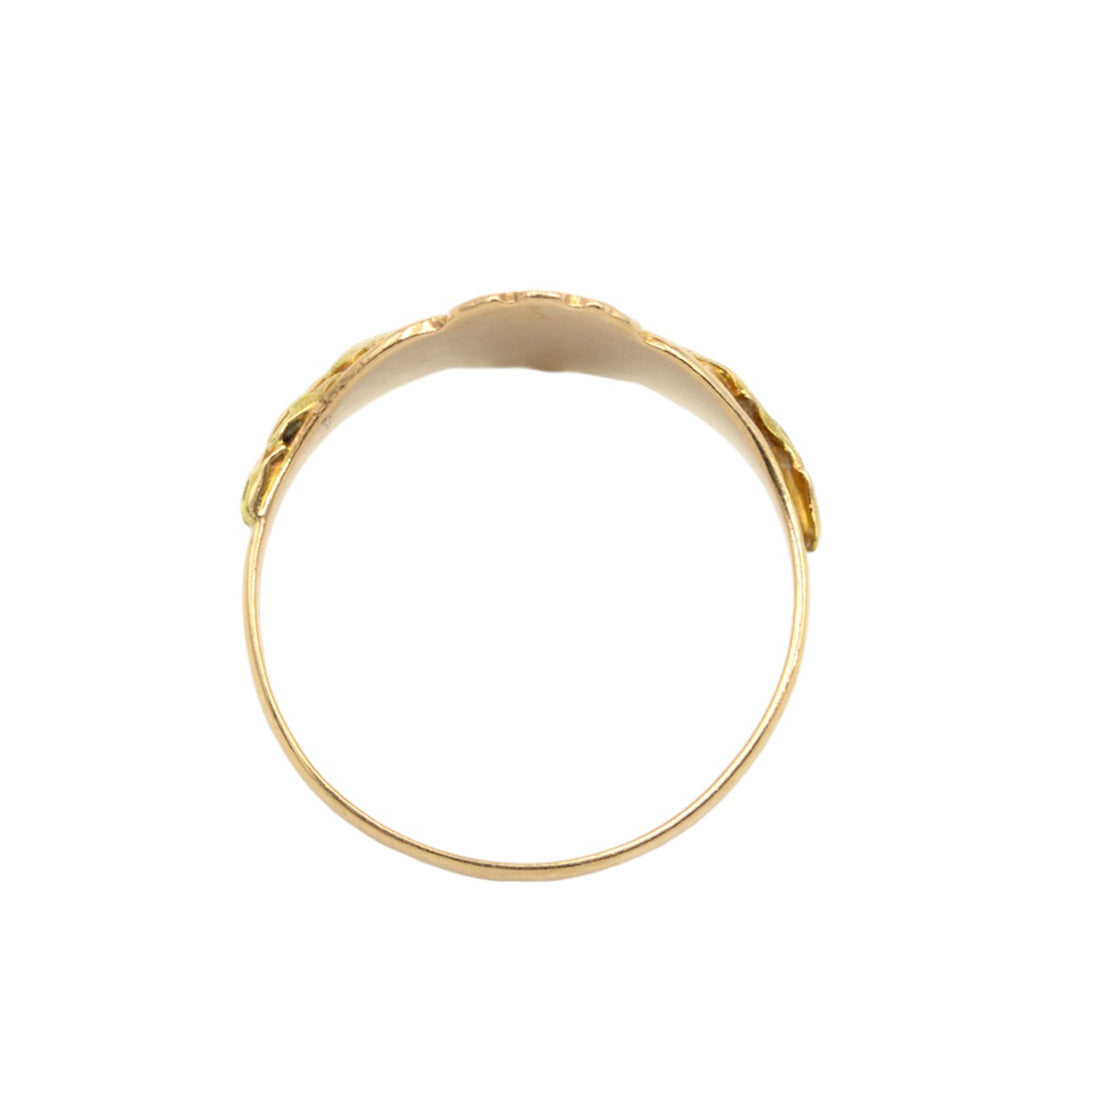 Antique Art Nouveau 10k Gold Signet Ring